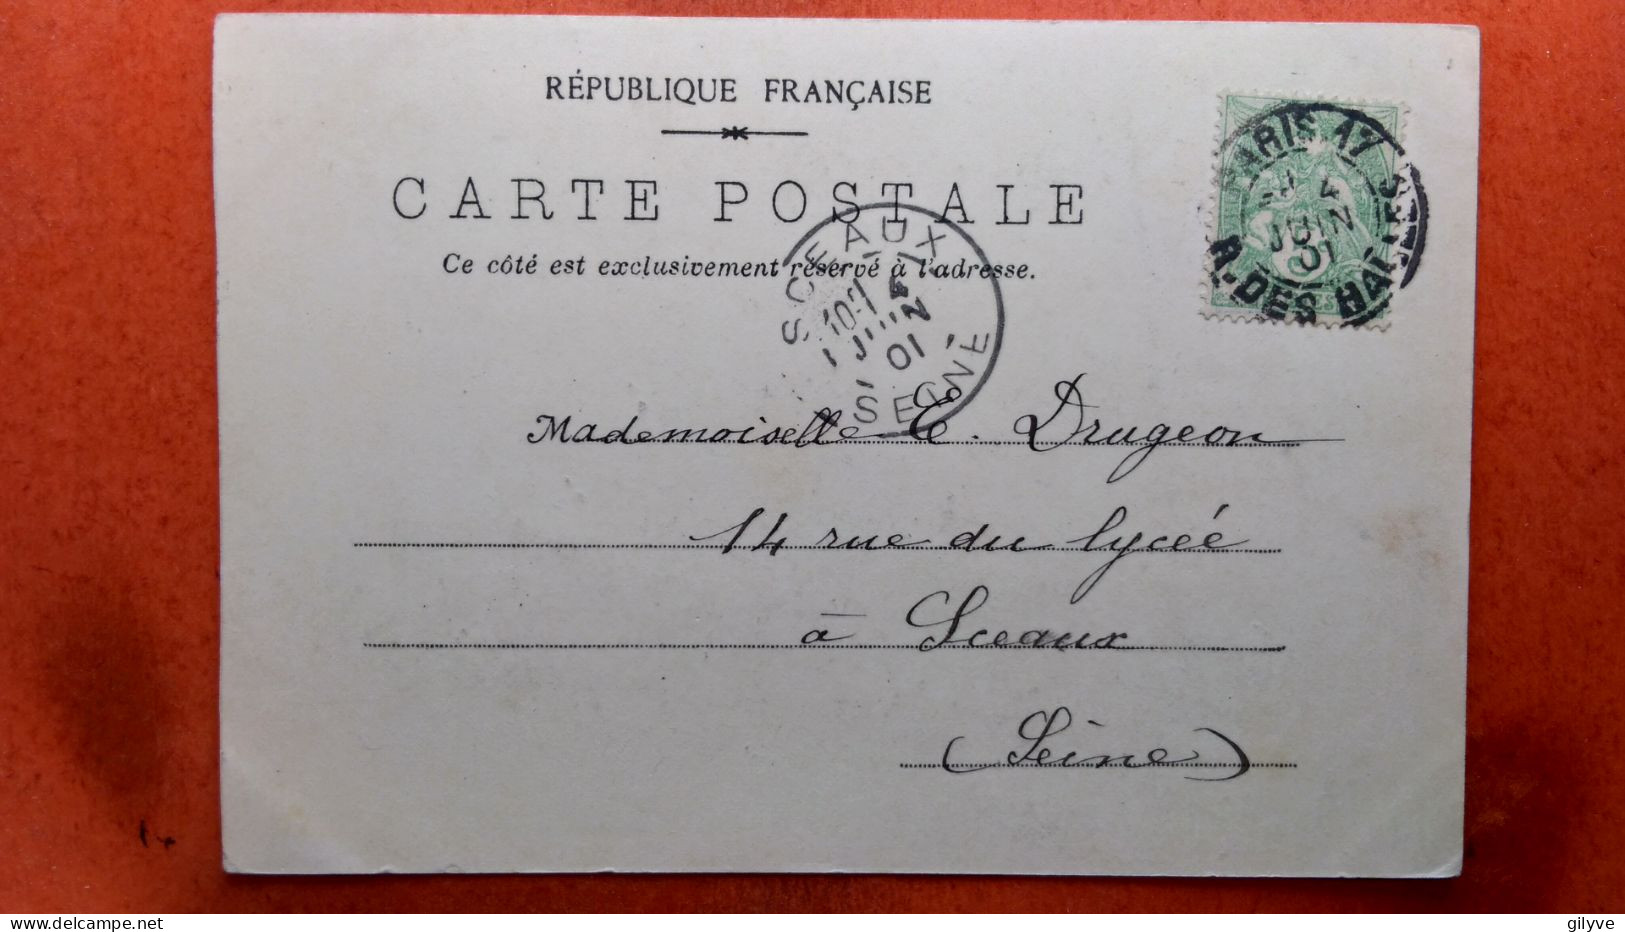 CPA (75) Exposition Universelle De Paris.1900. Château D'eau.   (7A.556) - Expositions